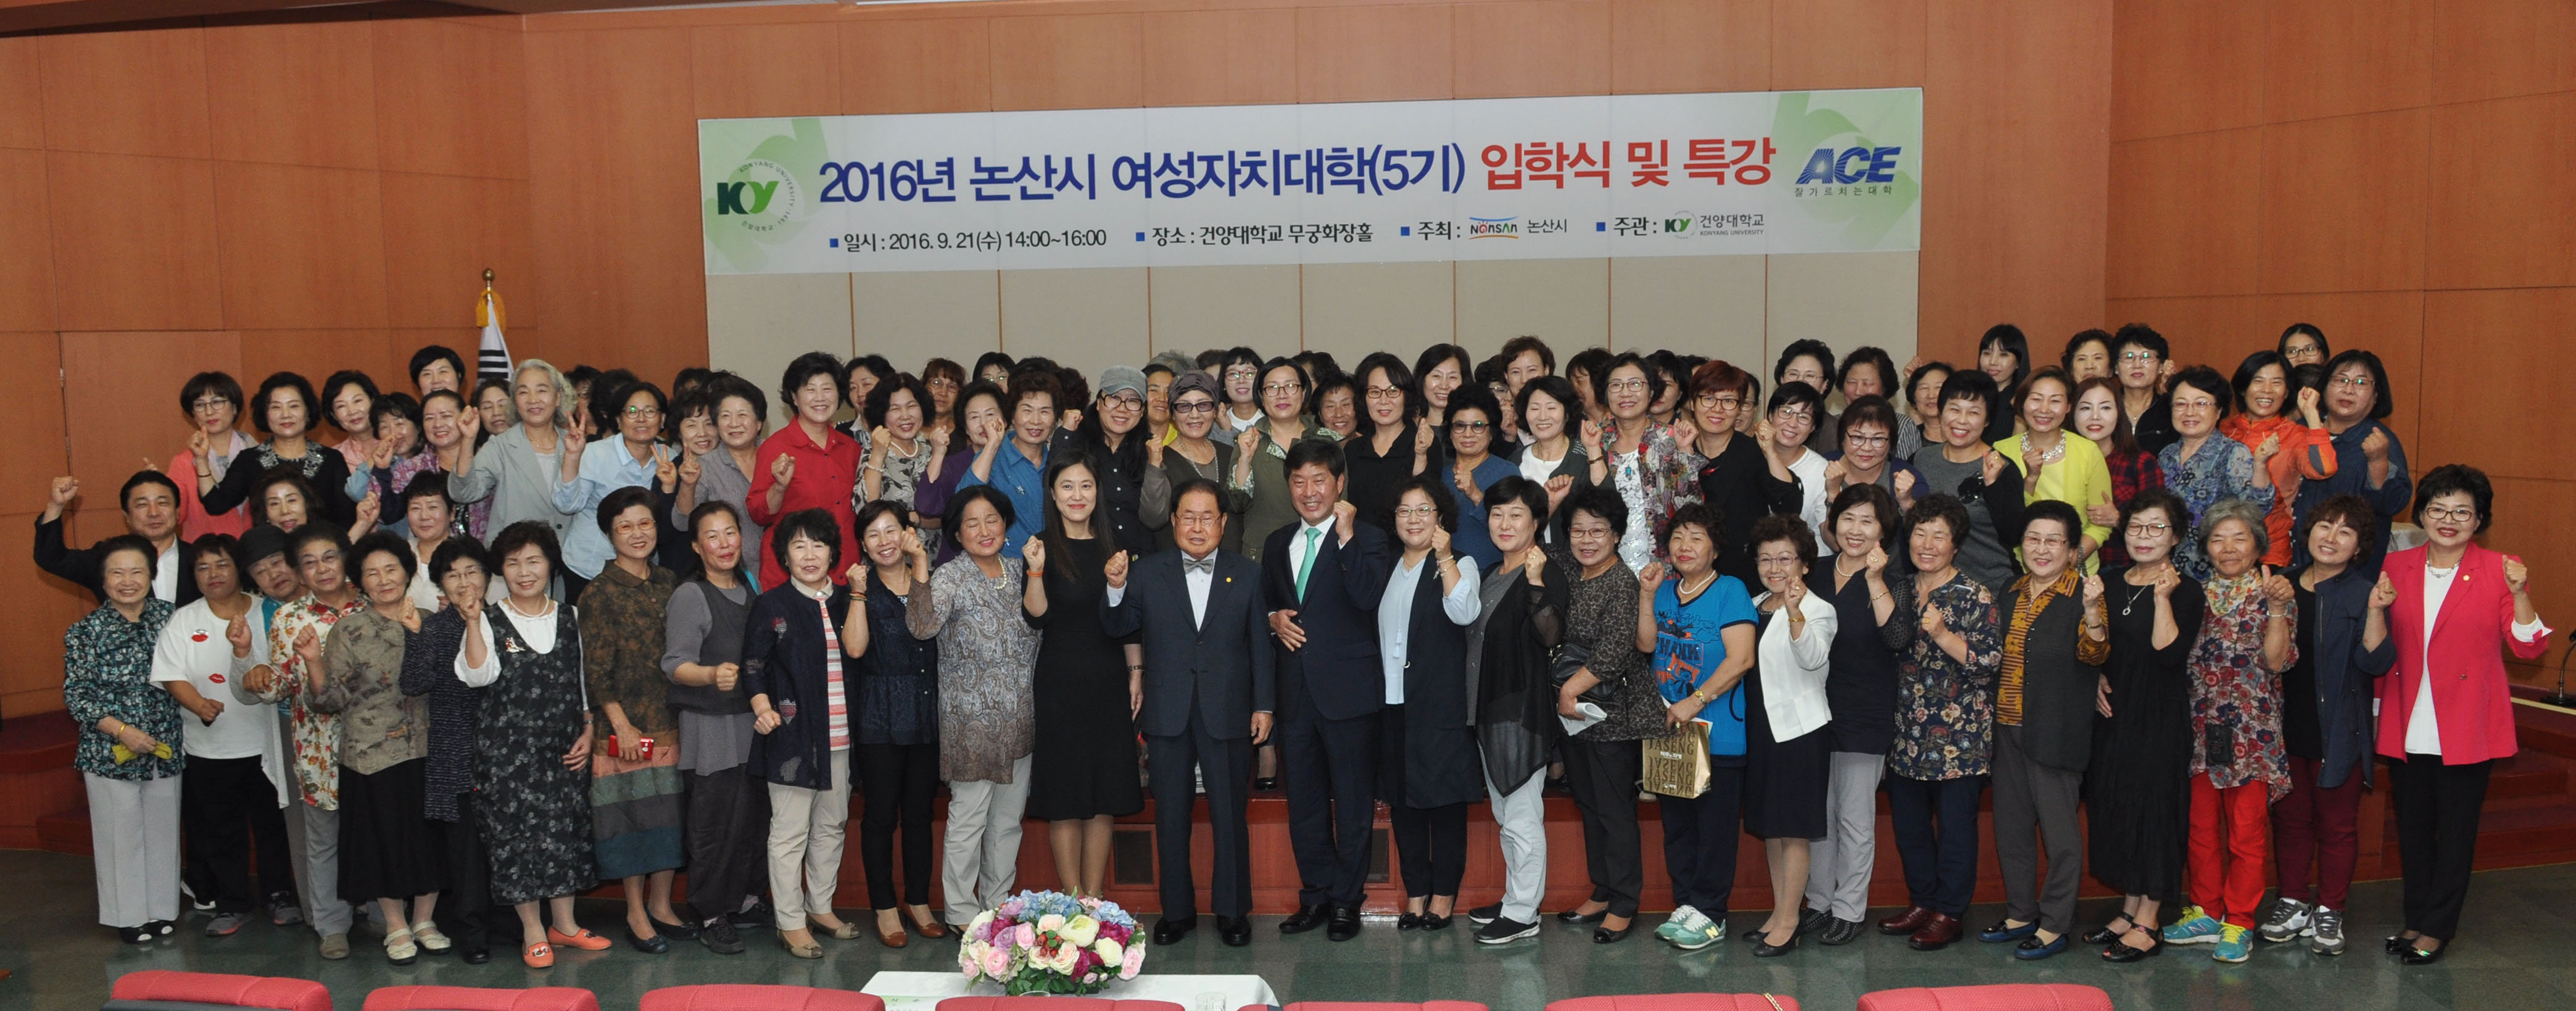 논산시 여성자치대학(5기), 21일 건양대서 성대한 개막